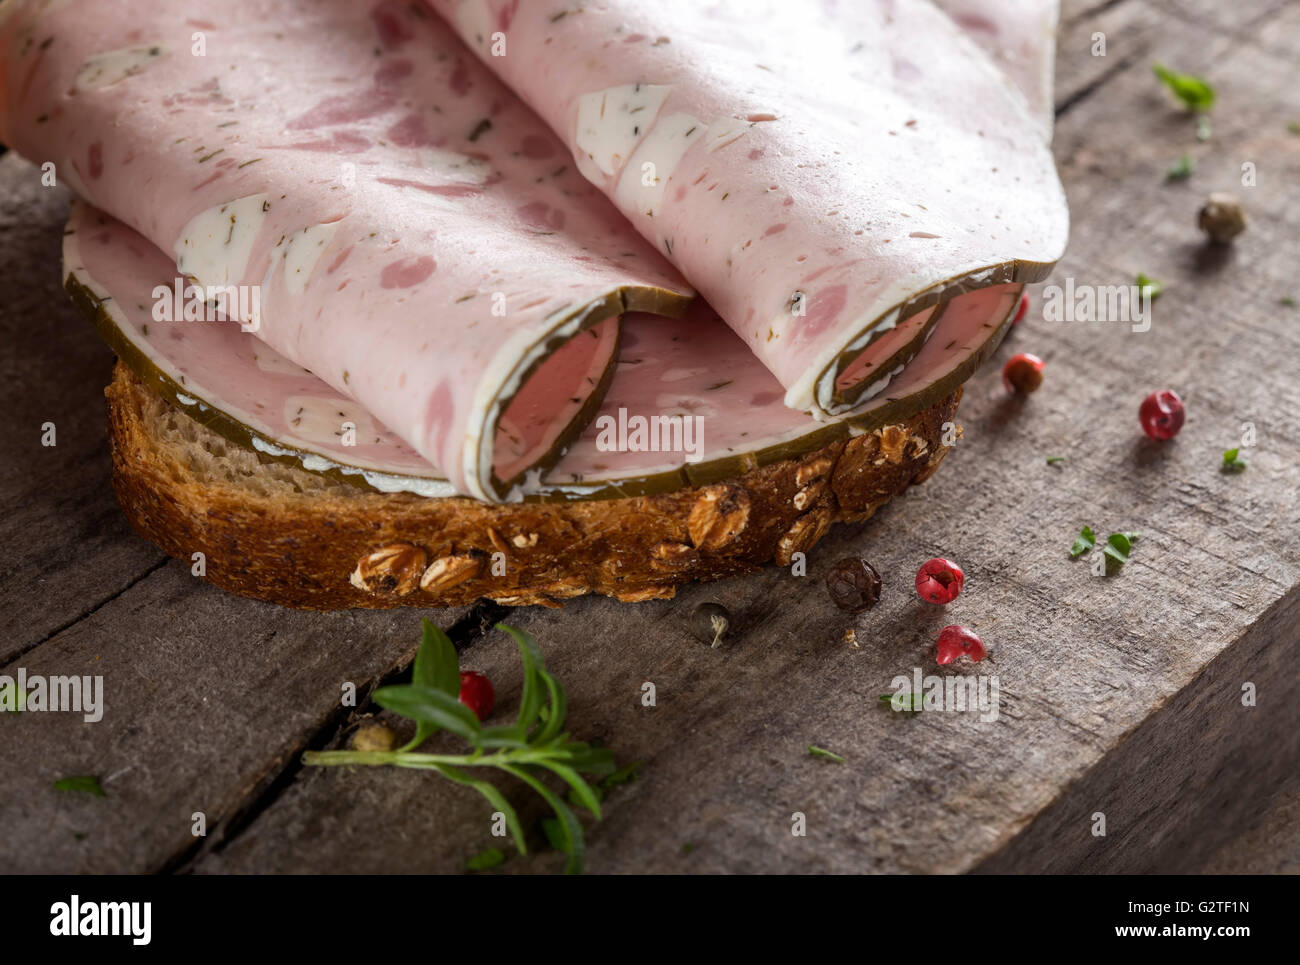 Viandes de spécialité sandwich fait avec fromage de brebis et feuilles de vigne Banque D'Images